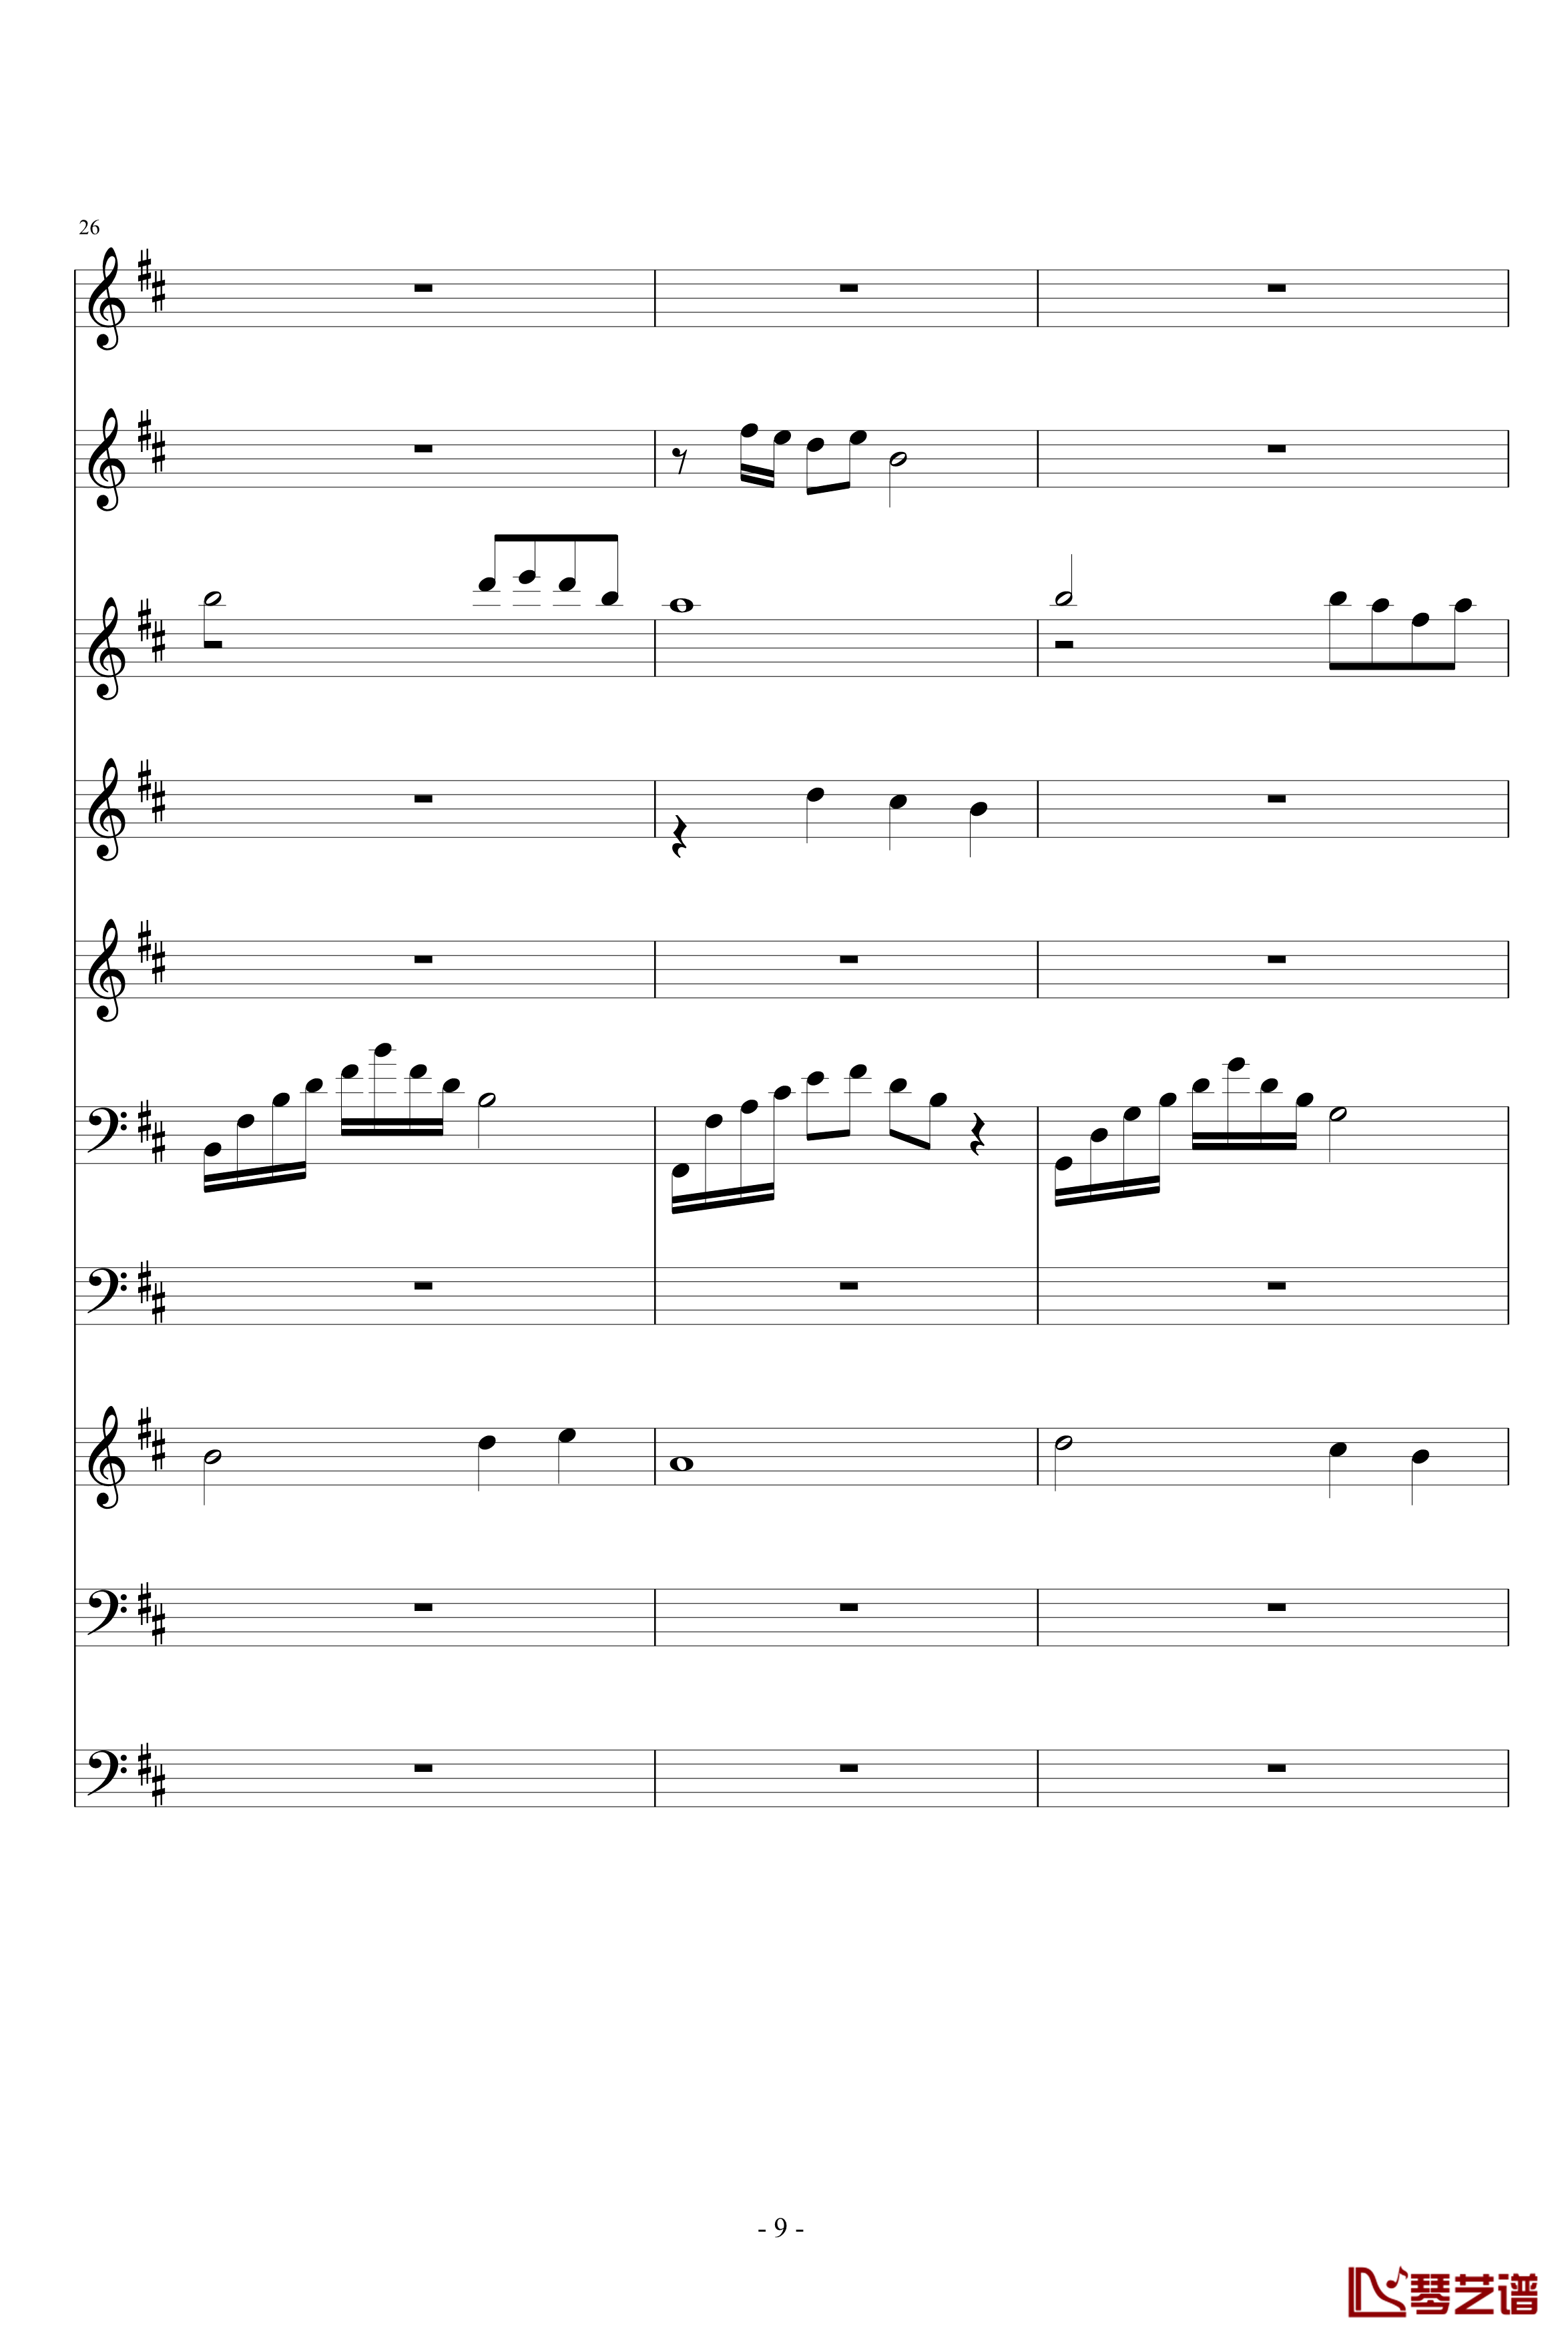 月落暗香坡钢琴谱-巴乌、笛子、琵琶、二胡、古筝-peterkingily9